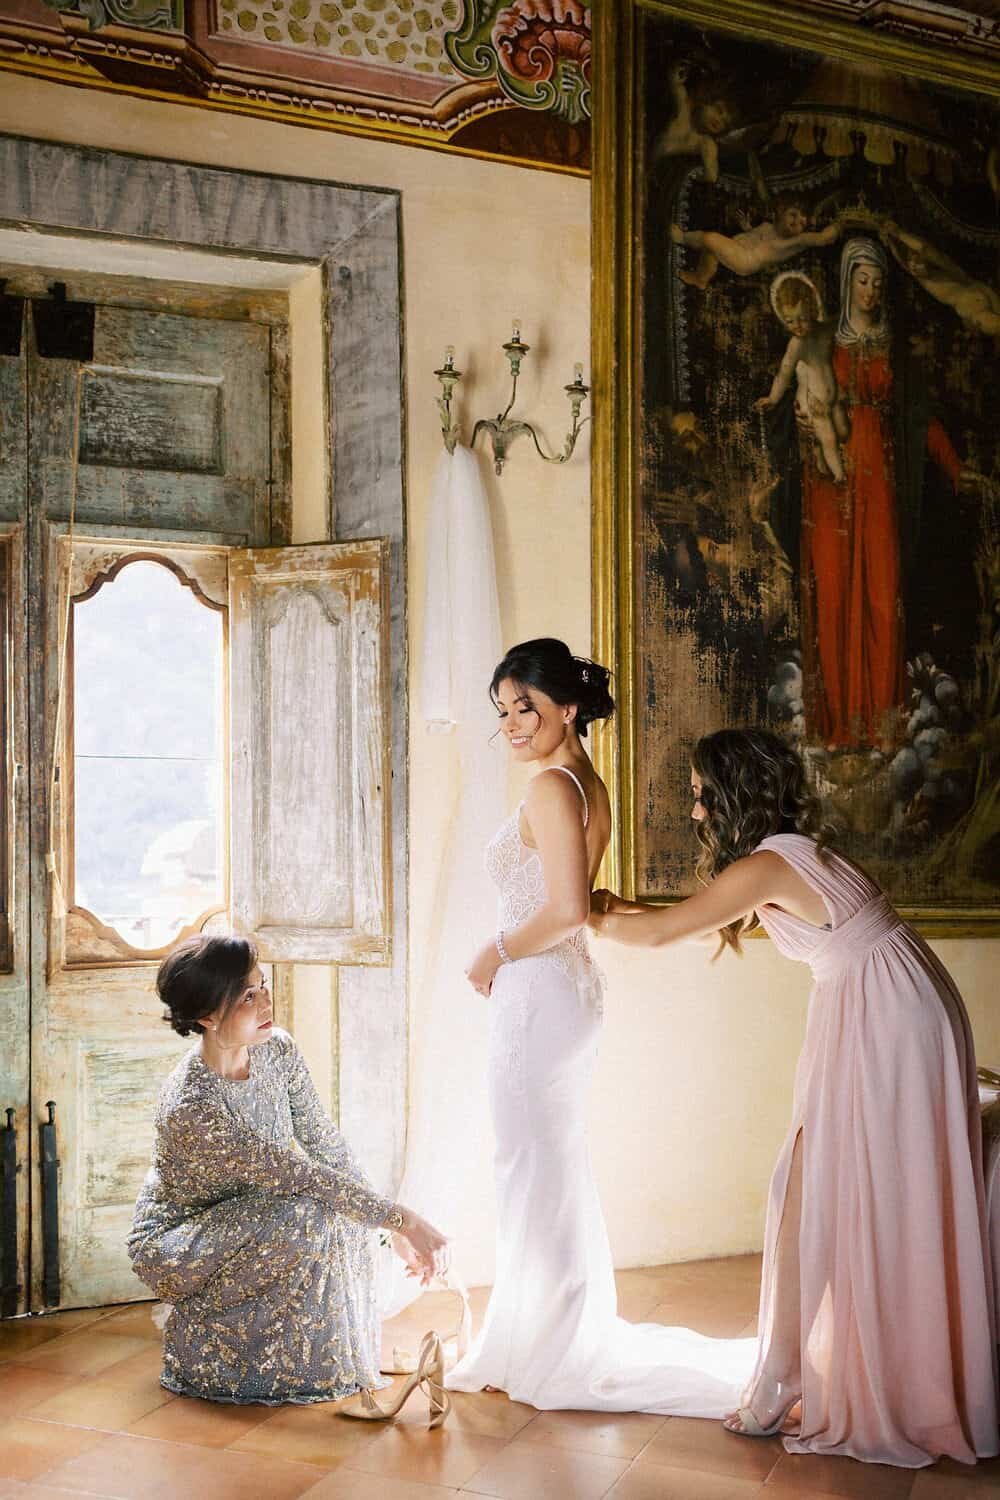 Positano-wedding-villa-San-Giacomo-bride-getting-ready-by-Julia-Kaptelova-Photography-227